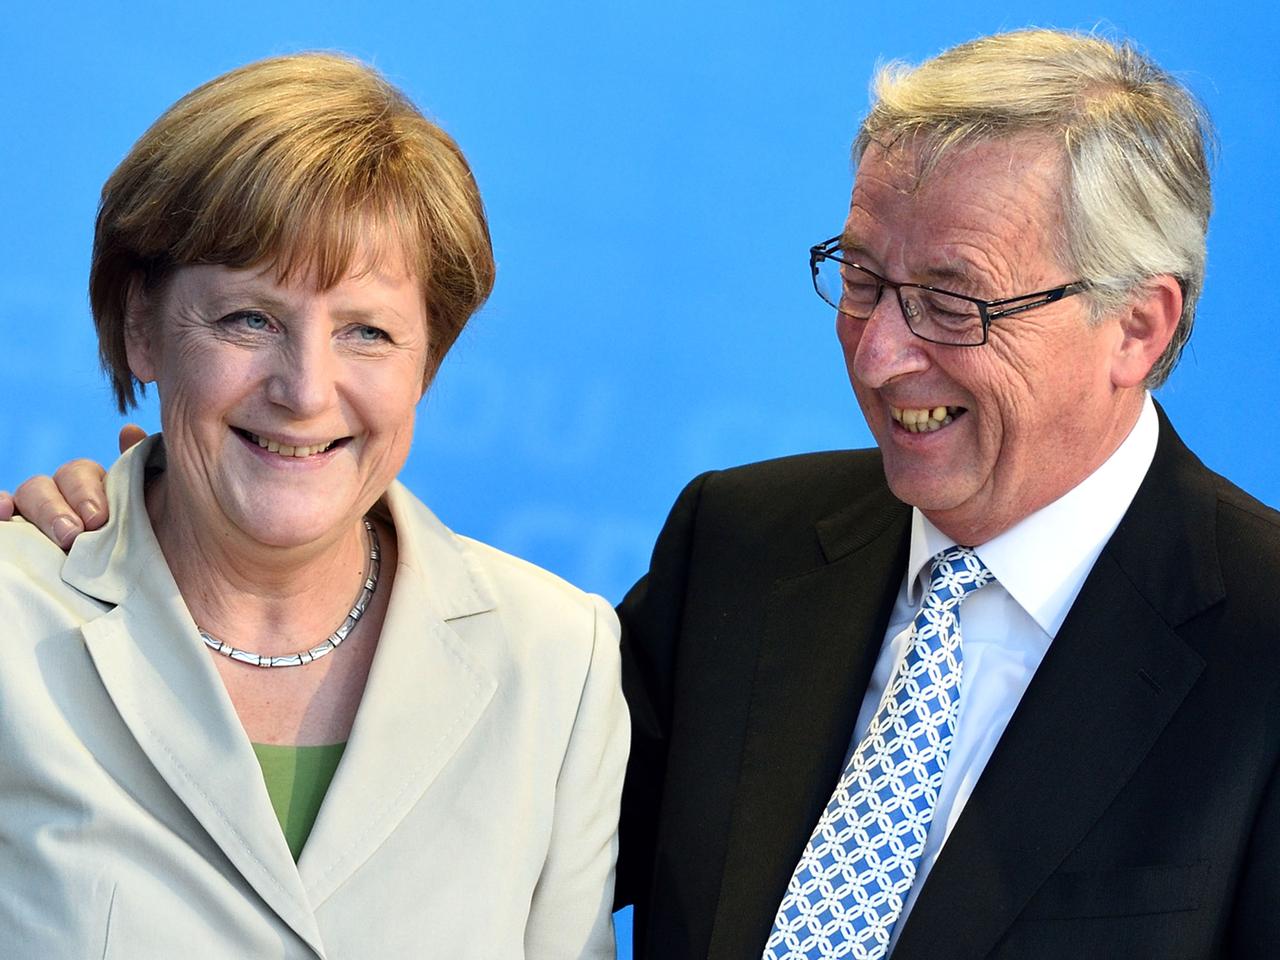 Kanzlerin Angela Merkel mit Jean-Claude Juncker während des Wahlkampfes zur Europawahl